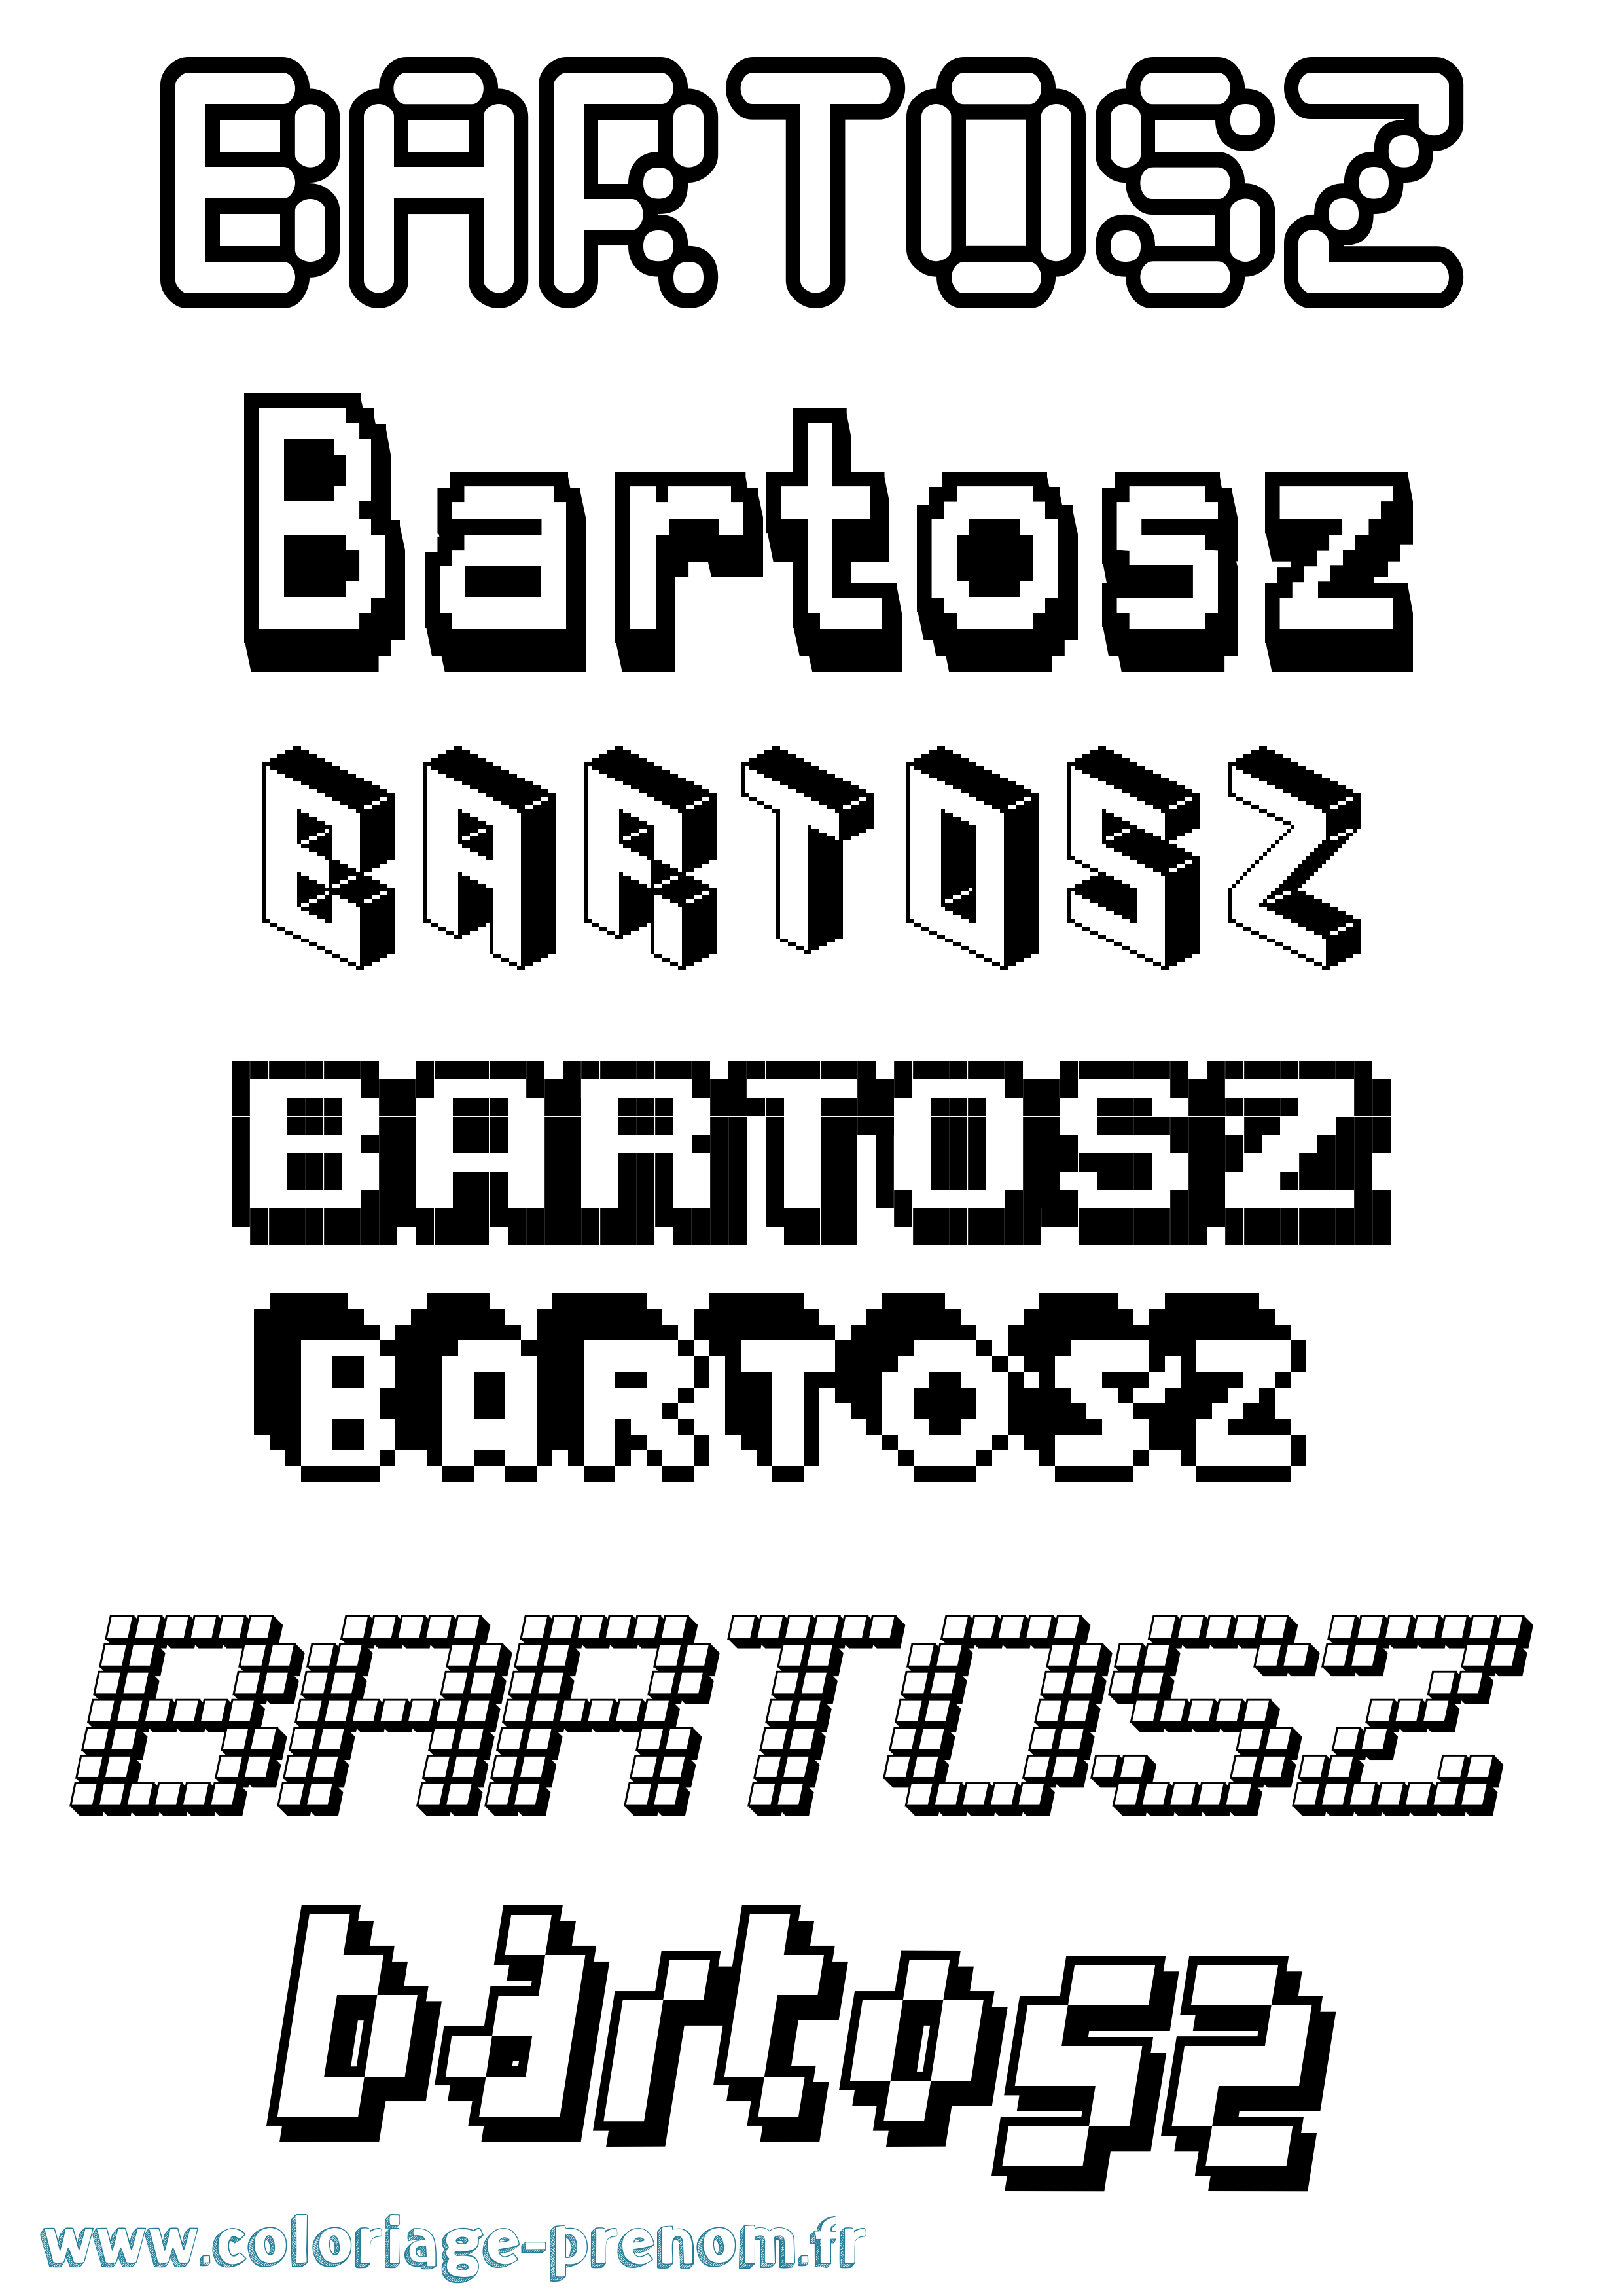 Coloriage prénom Bartosz Pixel